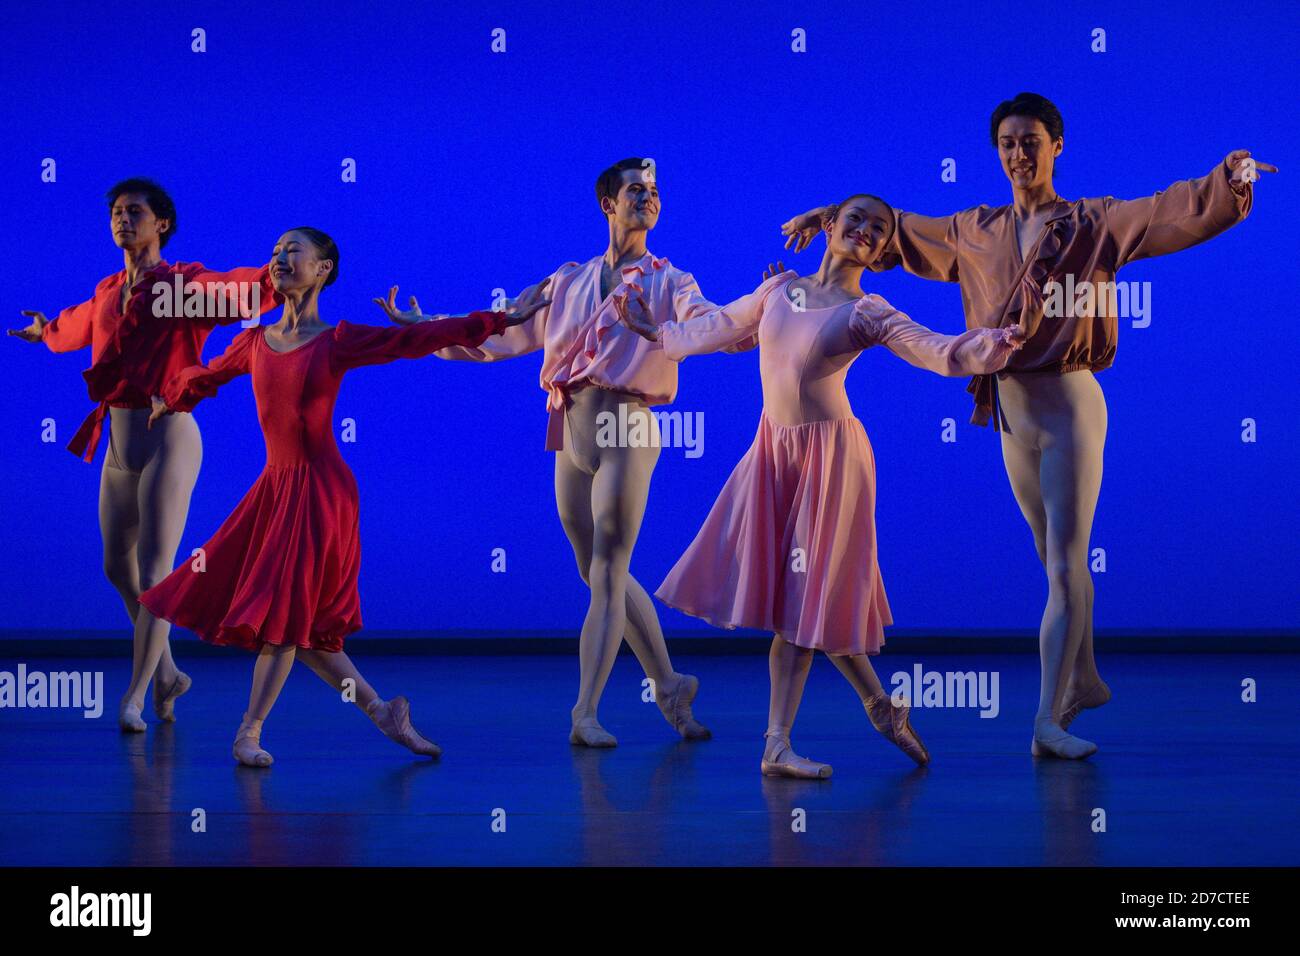 Les danseurs se produisent « Our Waltzes » lors d'une répétition de la robe de Lazuli Sky, une nouvelle production du Birmingham Royal Ballet au Birmingham Repertory Theatre qui ouvre le 22 octobre. Banque D'Images